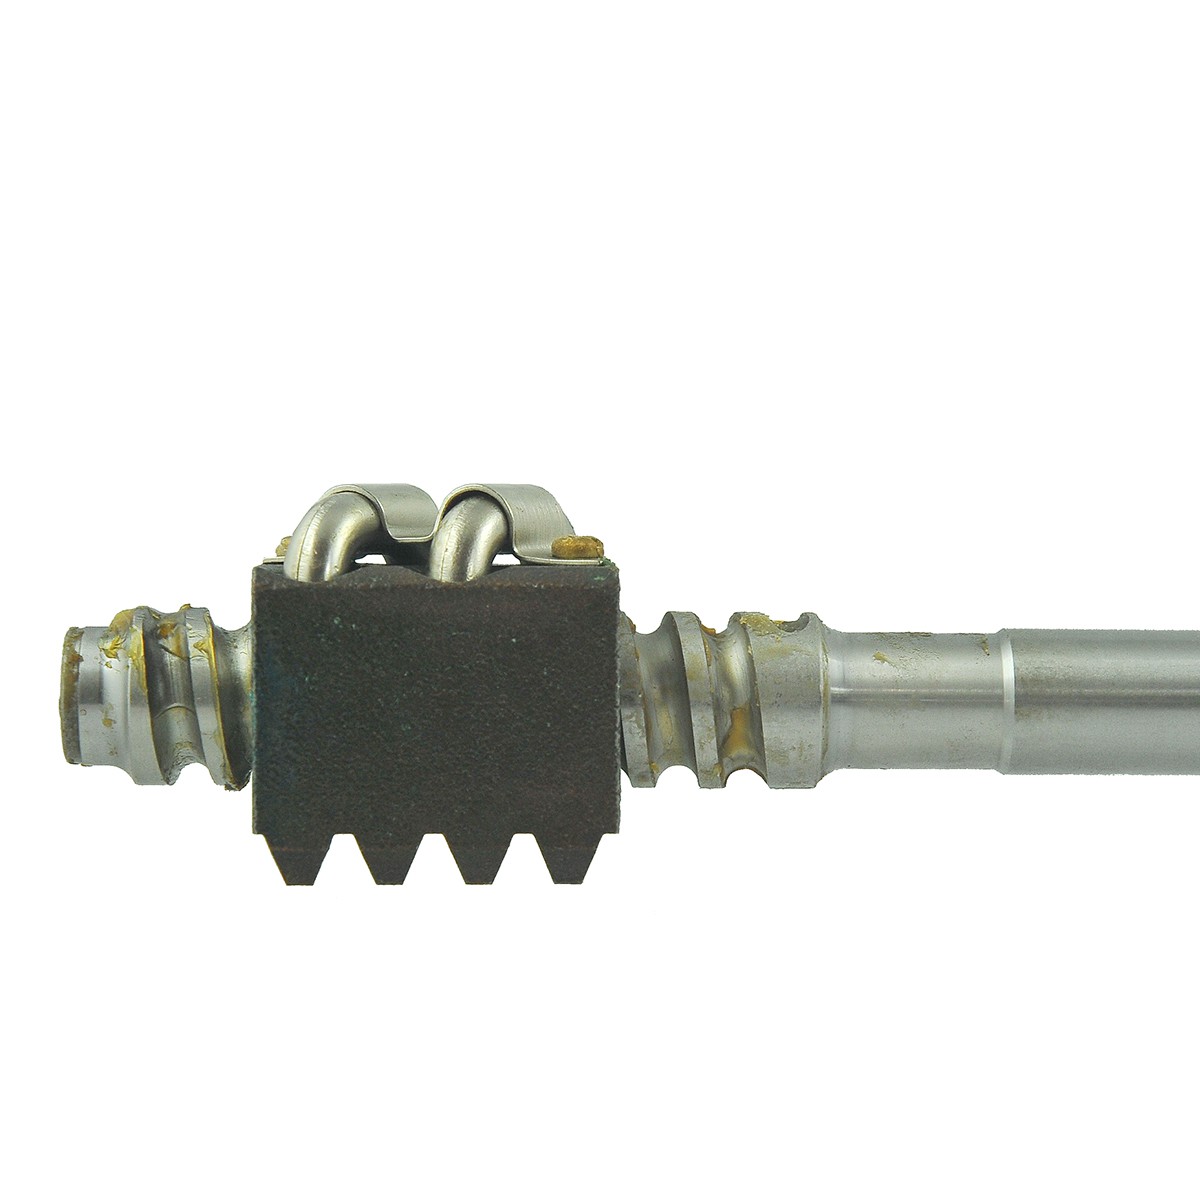 Steering column shaft 19 x 605 mm / Kubota L175F/L185D/L185F/L225/L225D/L245DT/L245F/L1500/L1501/L1801/L2000 / 34150-16200